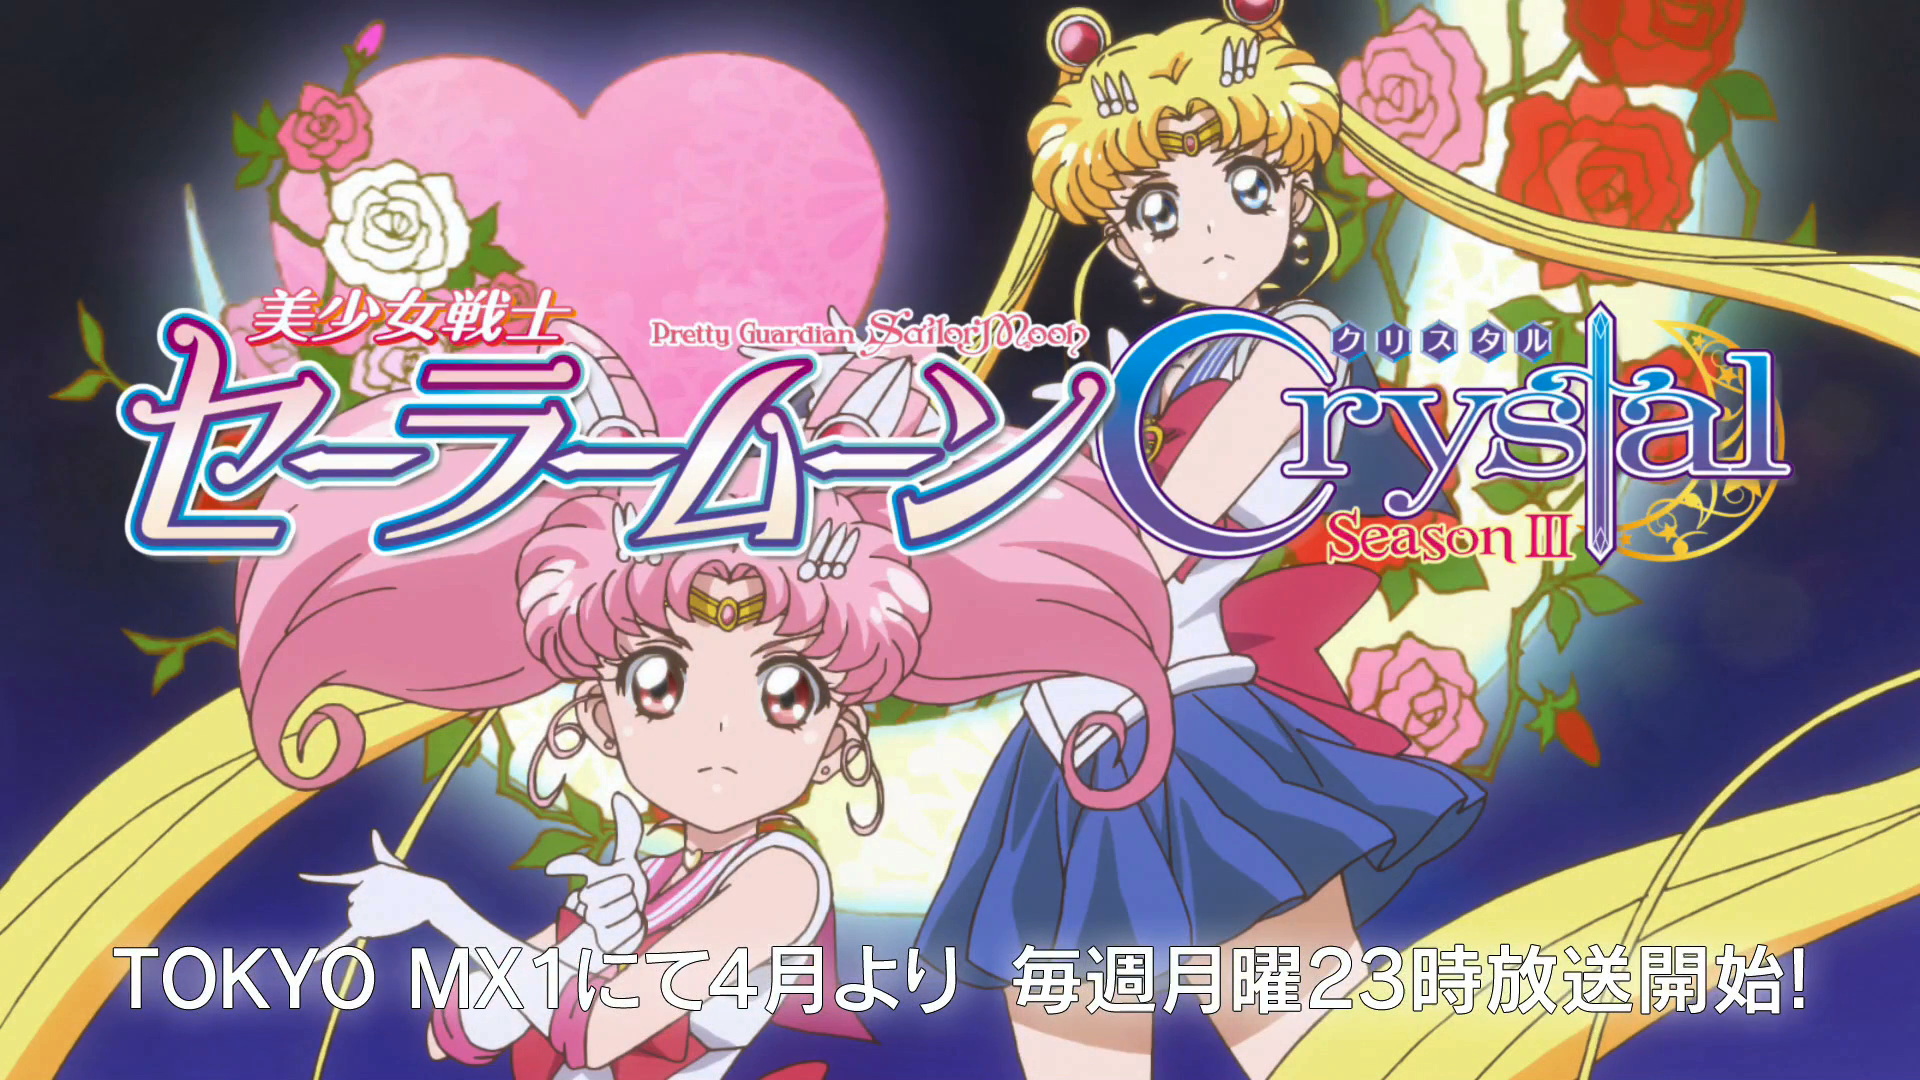 Álbum Sailor Moon Crystal – Temporada 3